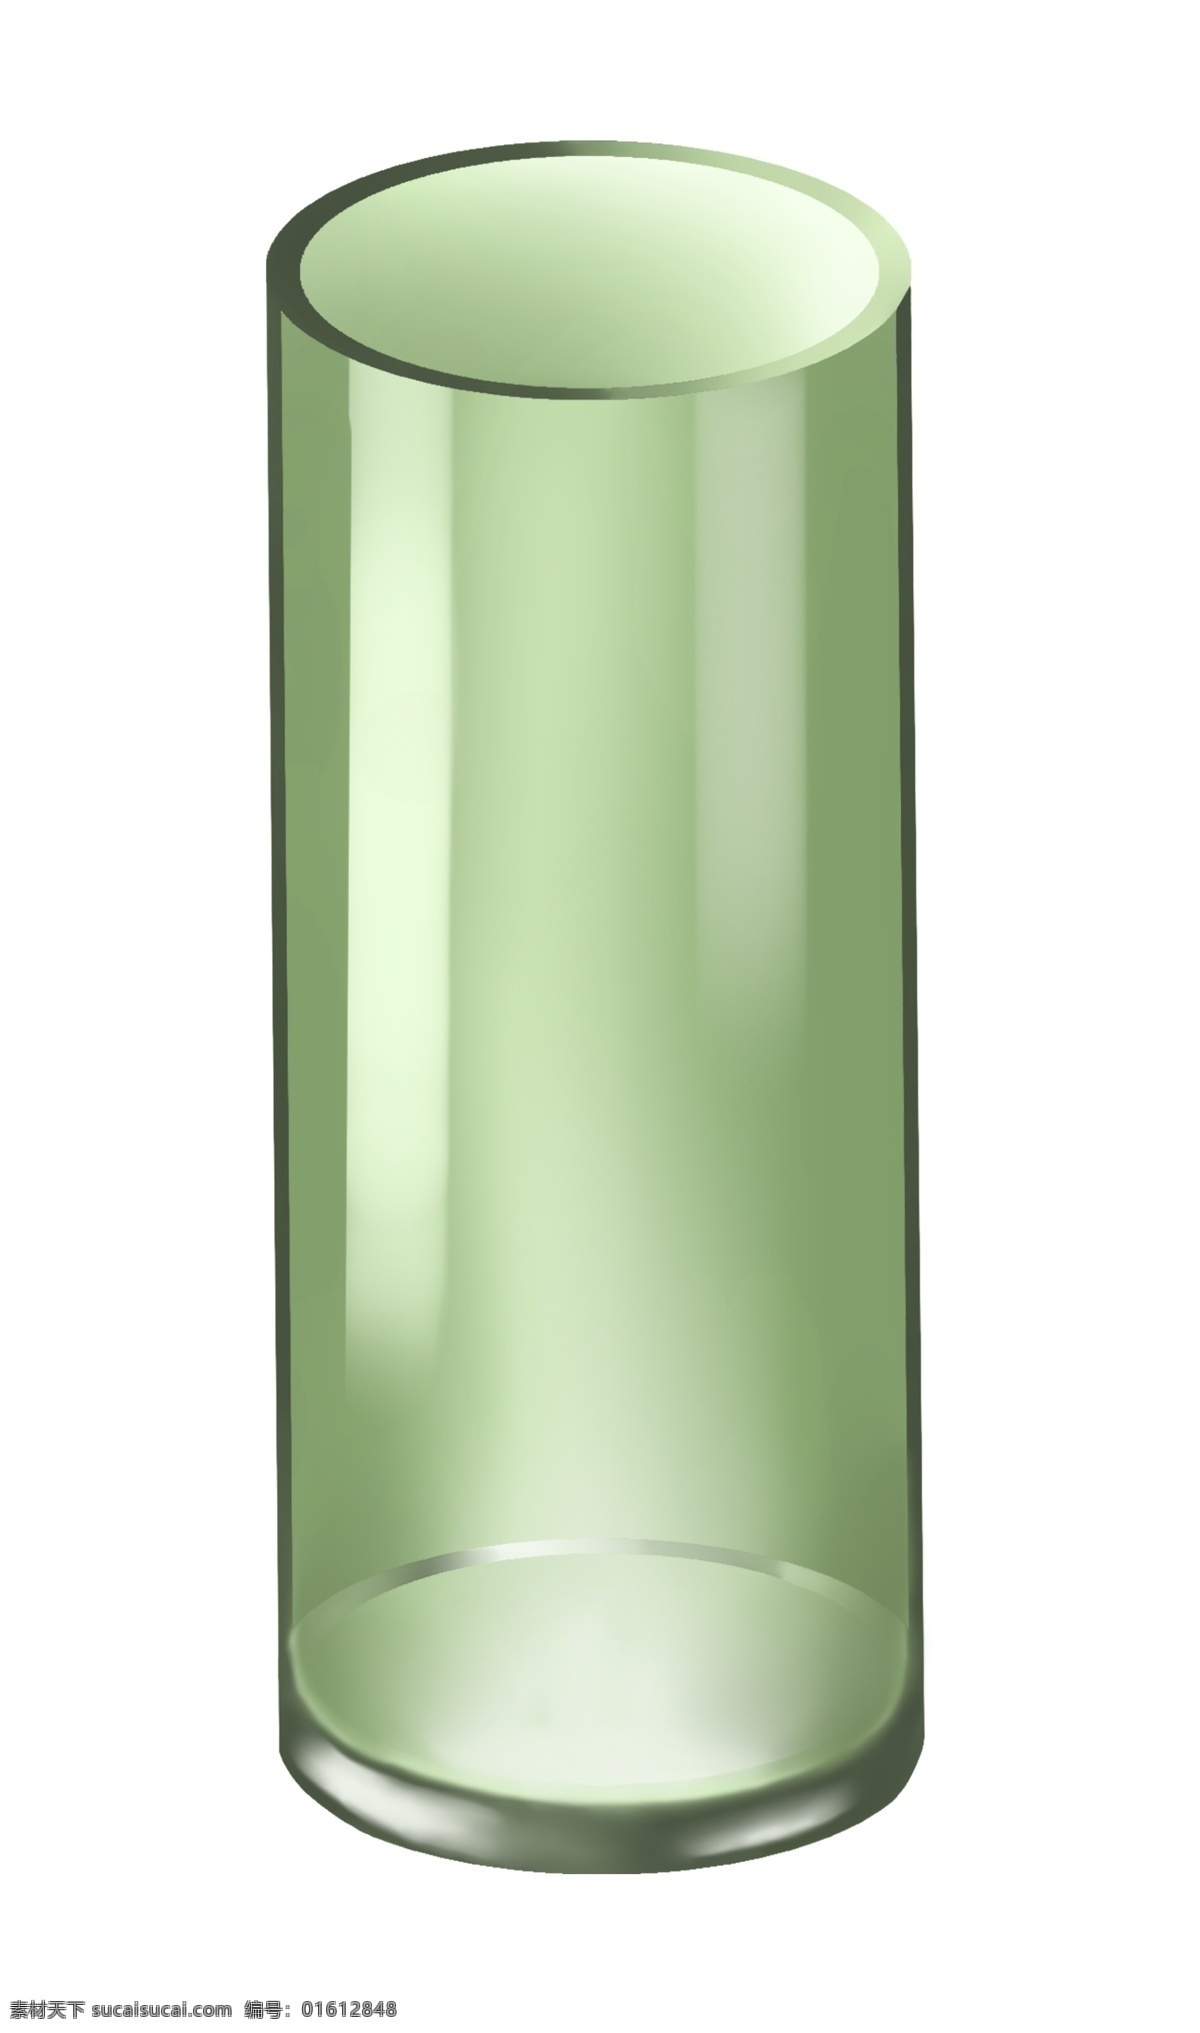 绿色 圆形 玻璃 杯子 简约的杯子 绿色杯子 生活用品 喝水杯子 旅游杯子 日常用品 日常气血 立体杯子